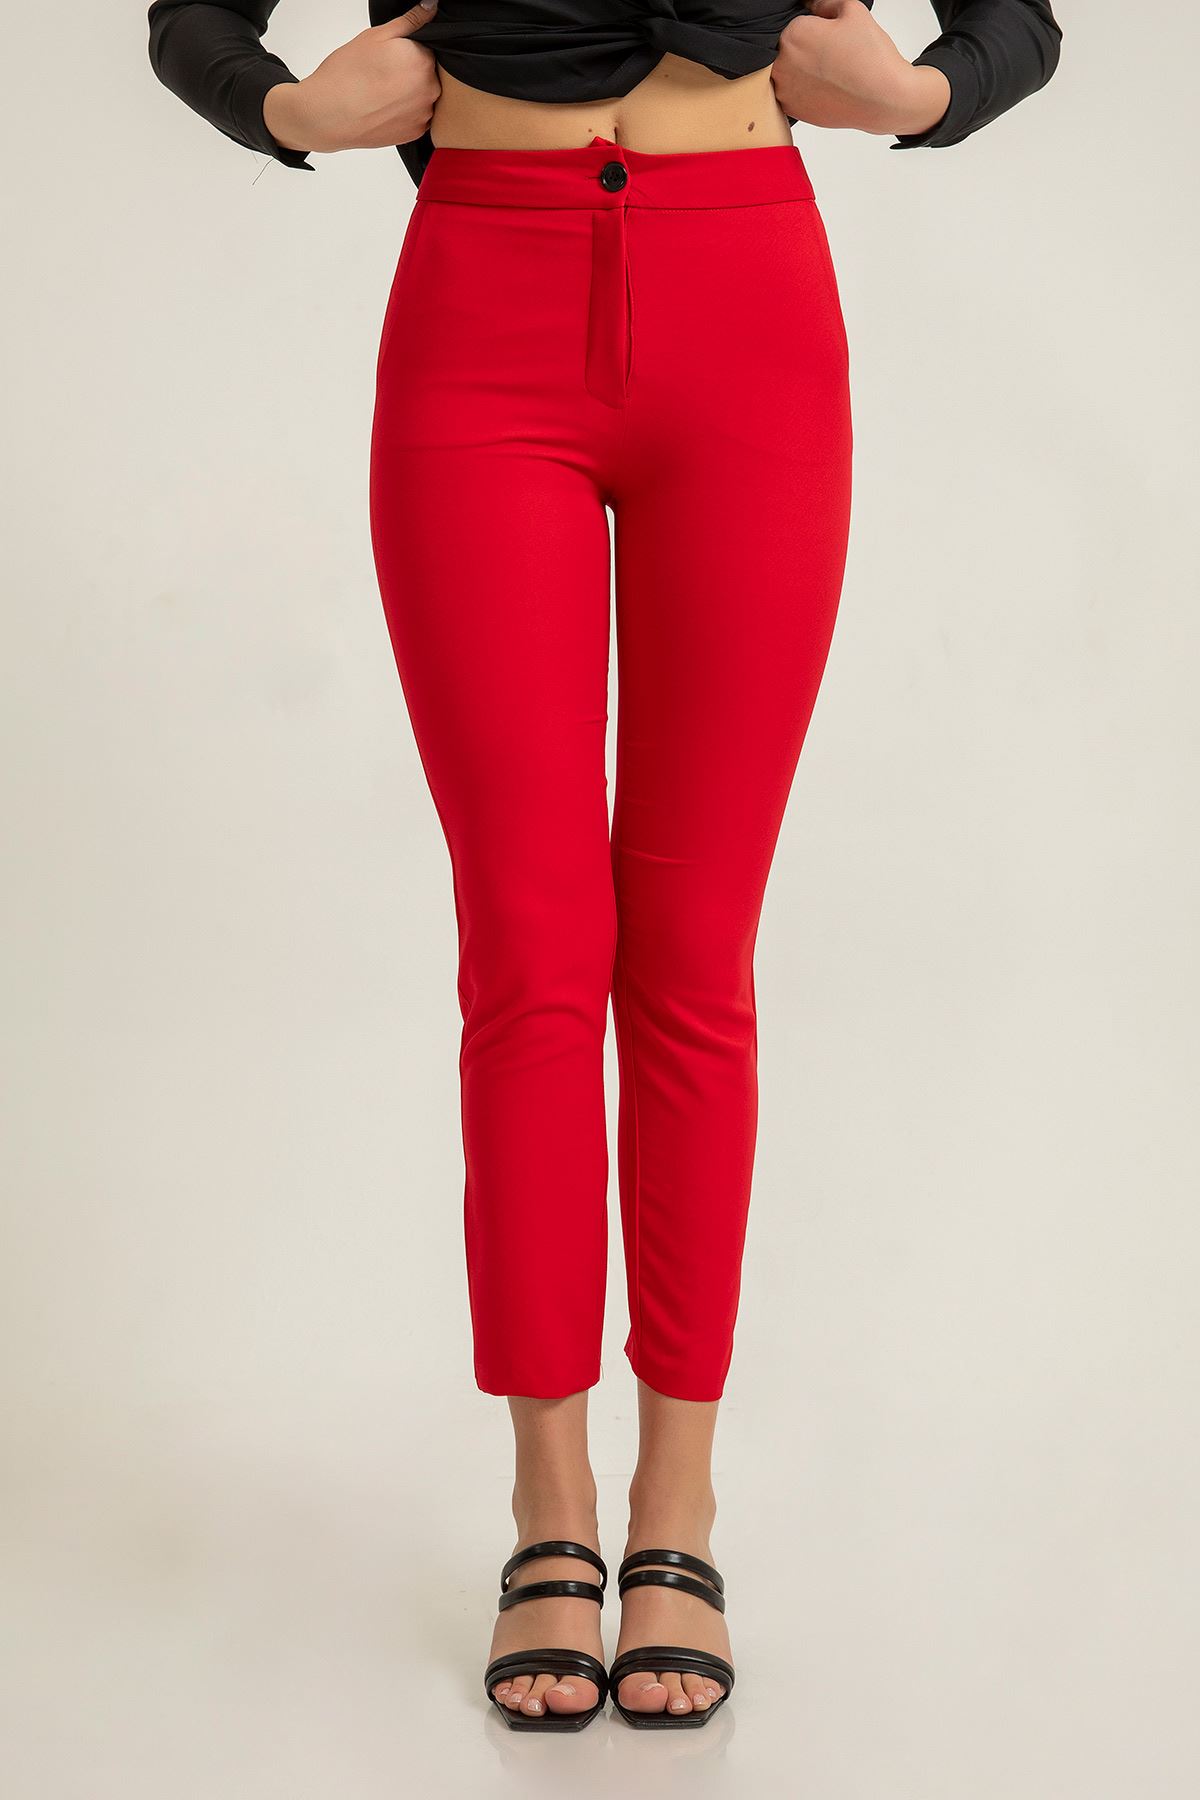 атласный ткань приталенные Женские брюки - Kрасный